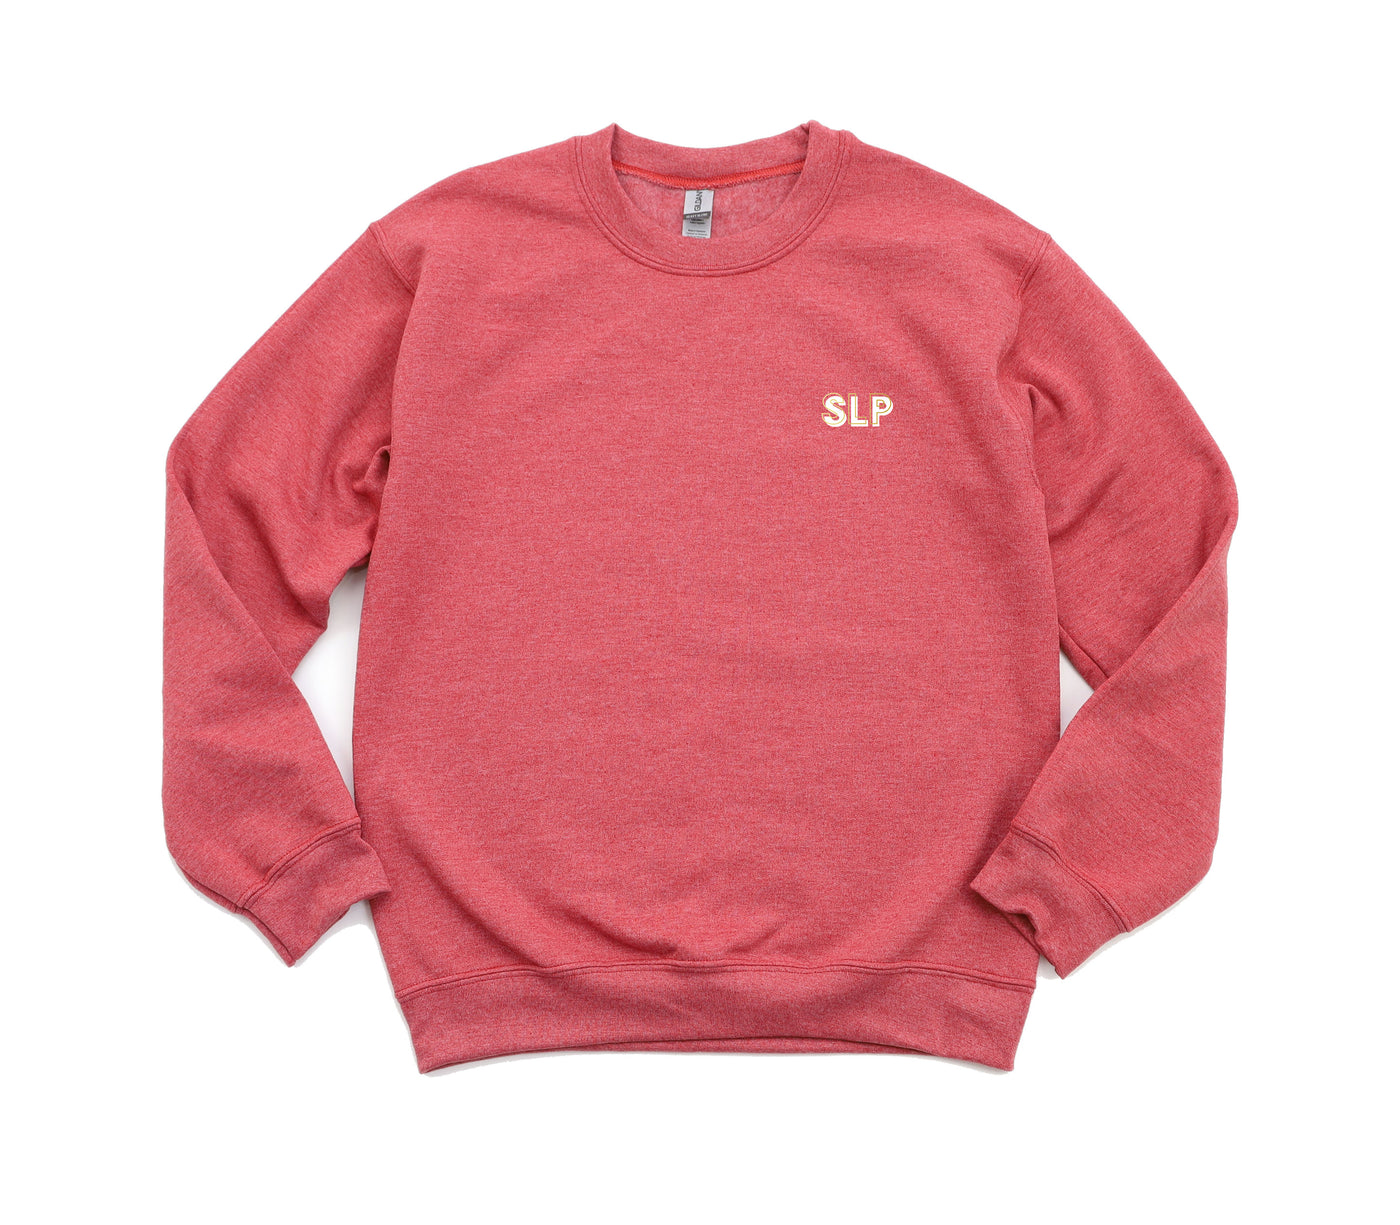 SLP Creds - Non-Pocketed Crew Sweatshirt